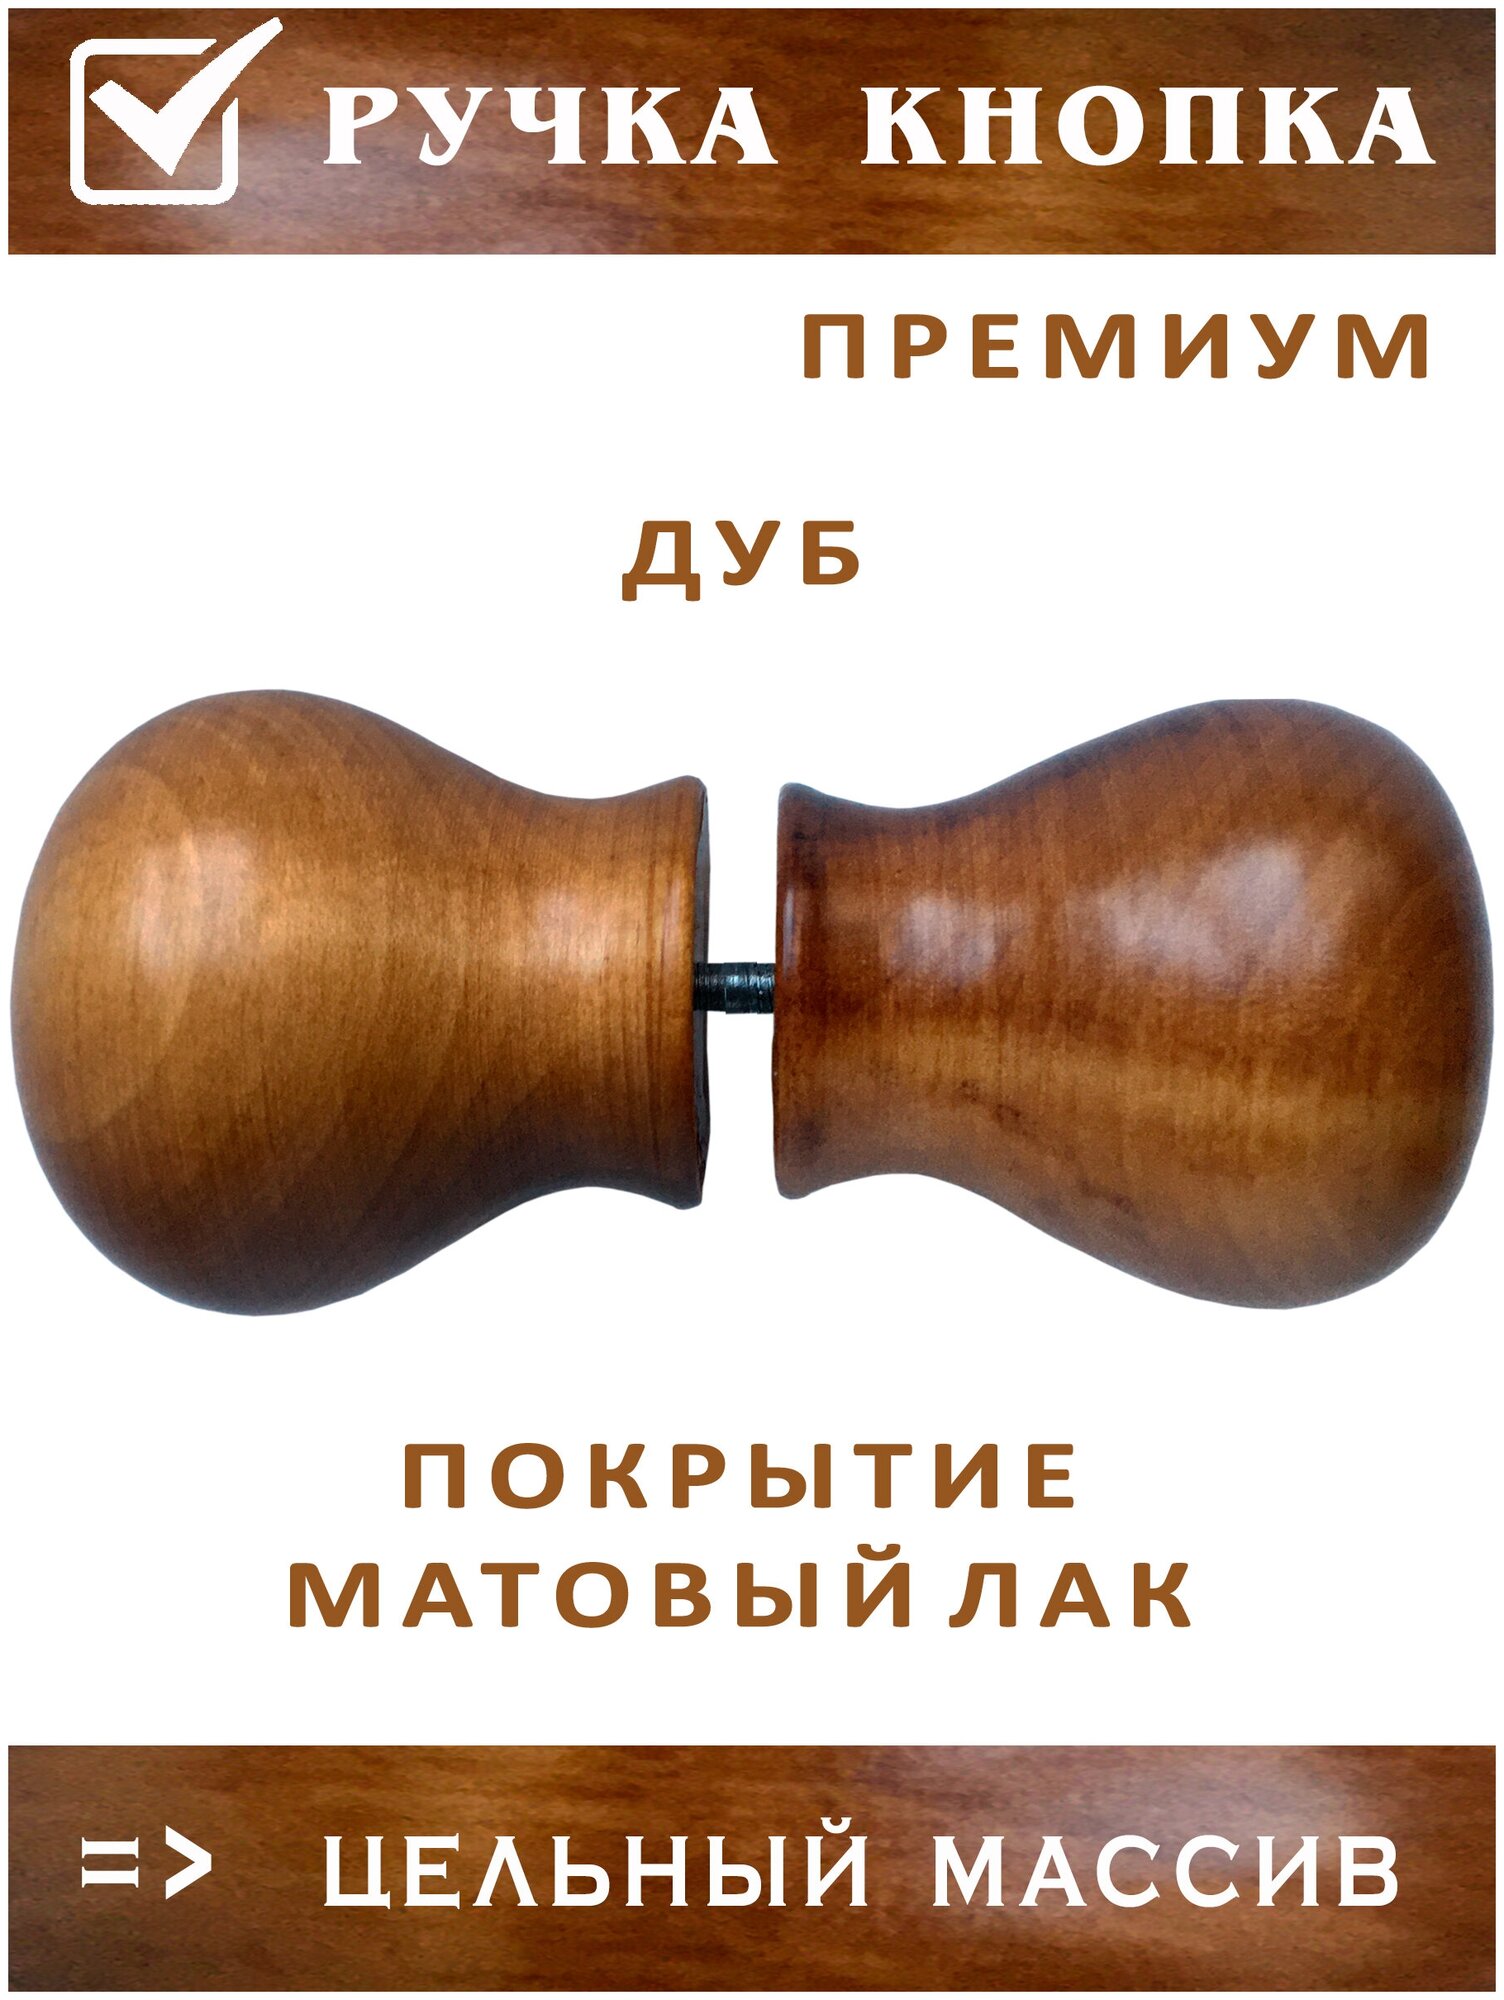 Дверная деревянная ручка кнопка РК (2 пары) для межкомнатной двери Дуб. Матовый лак - фотография № 2